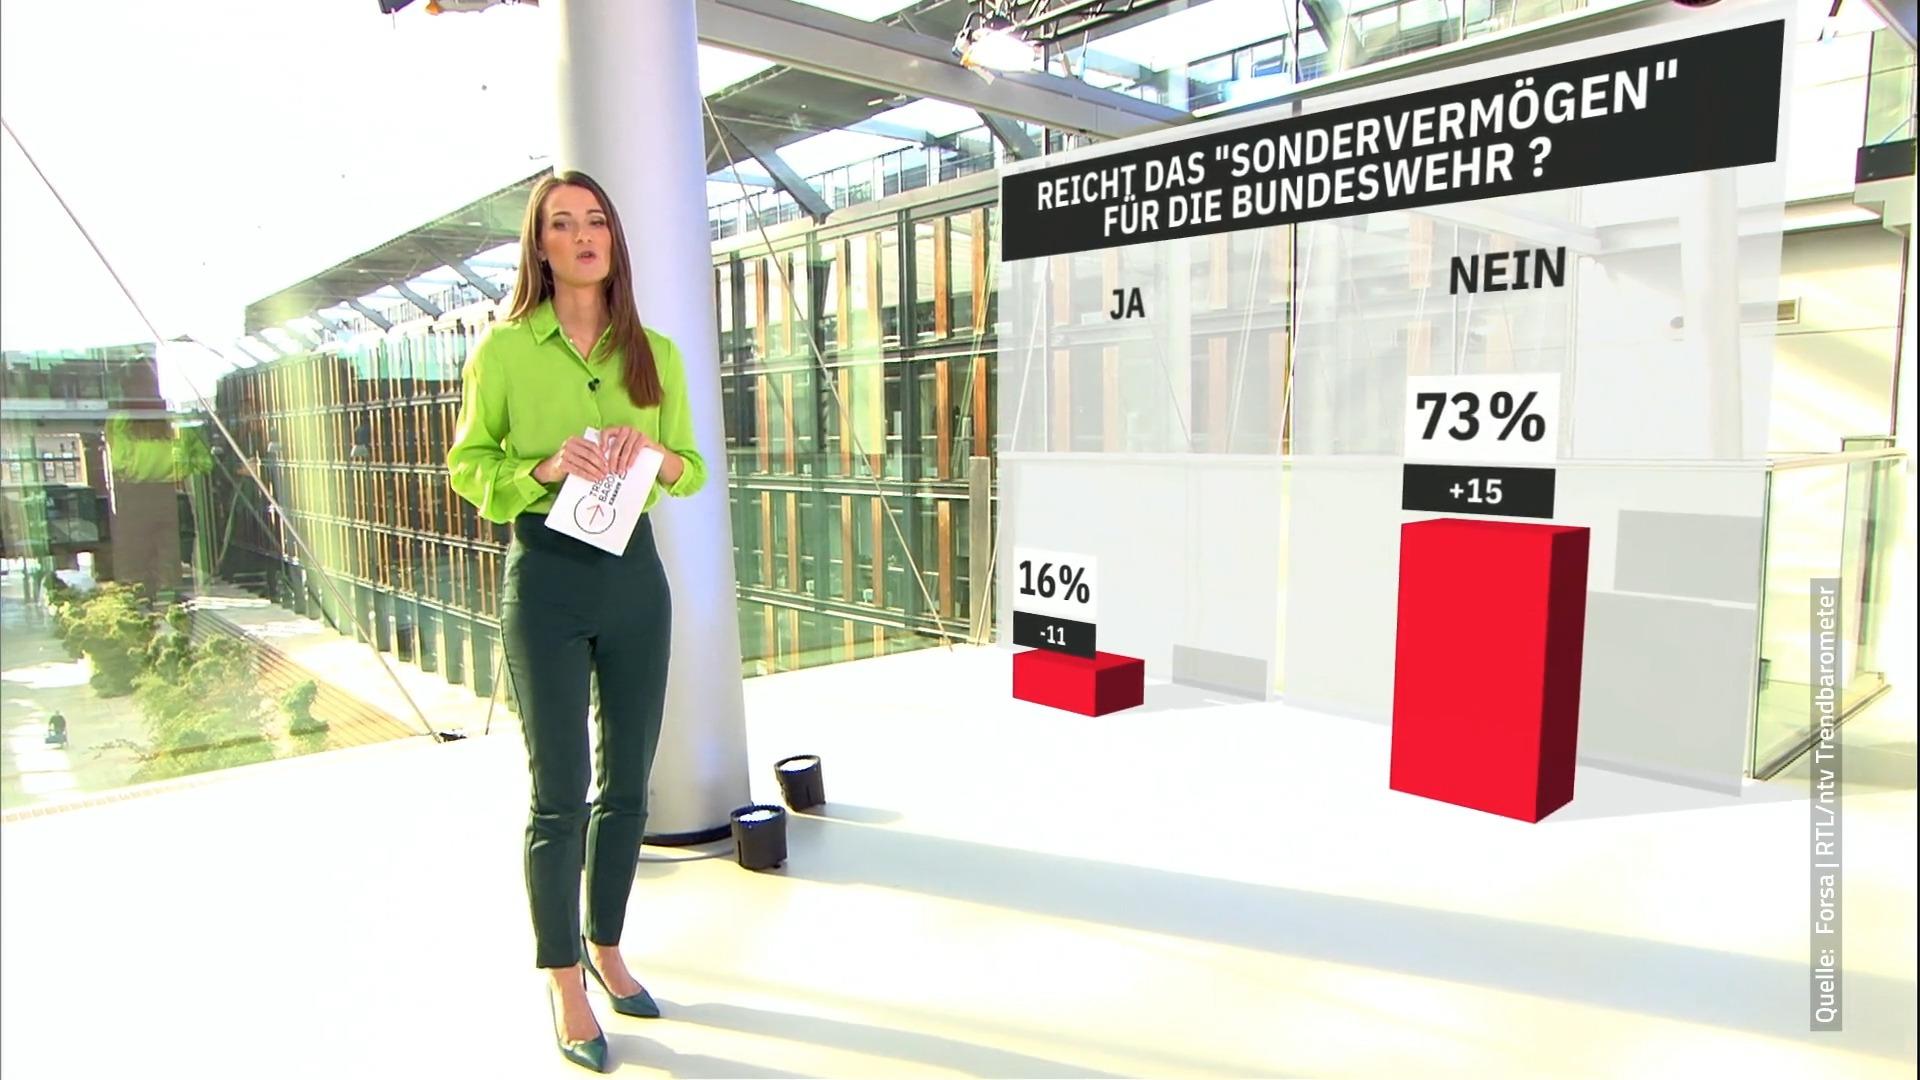 Bundeswehr-Sondervermögen reicht nicht! RTL/ntv-Trendbarometer